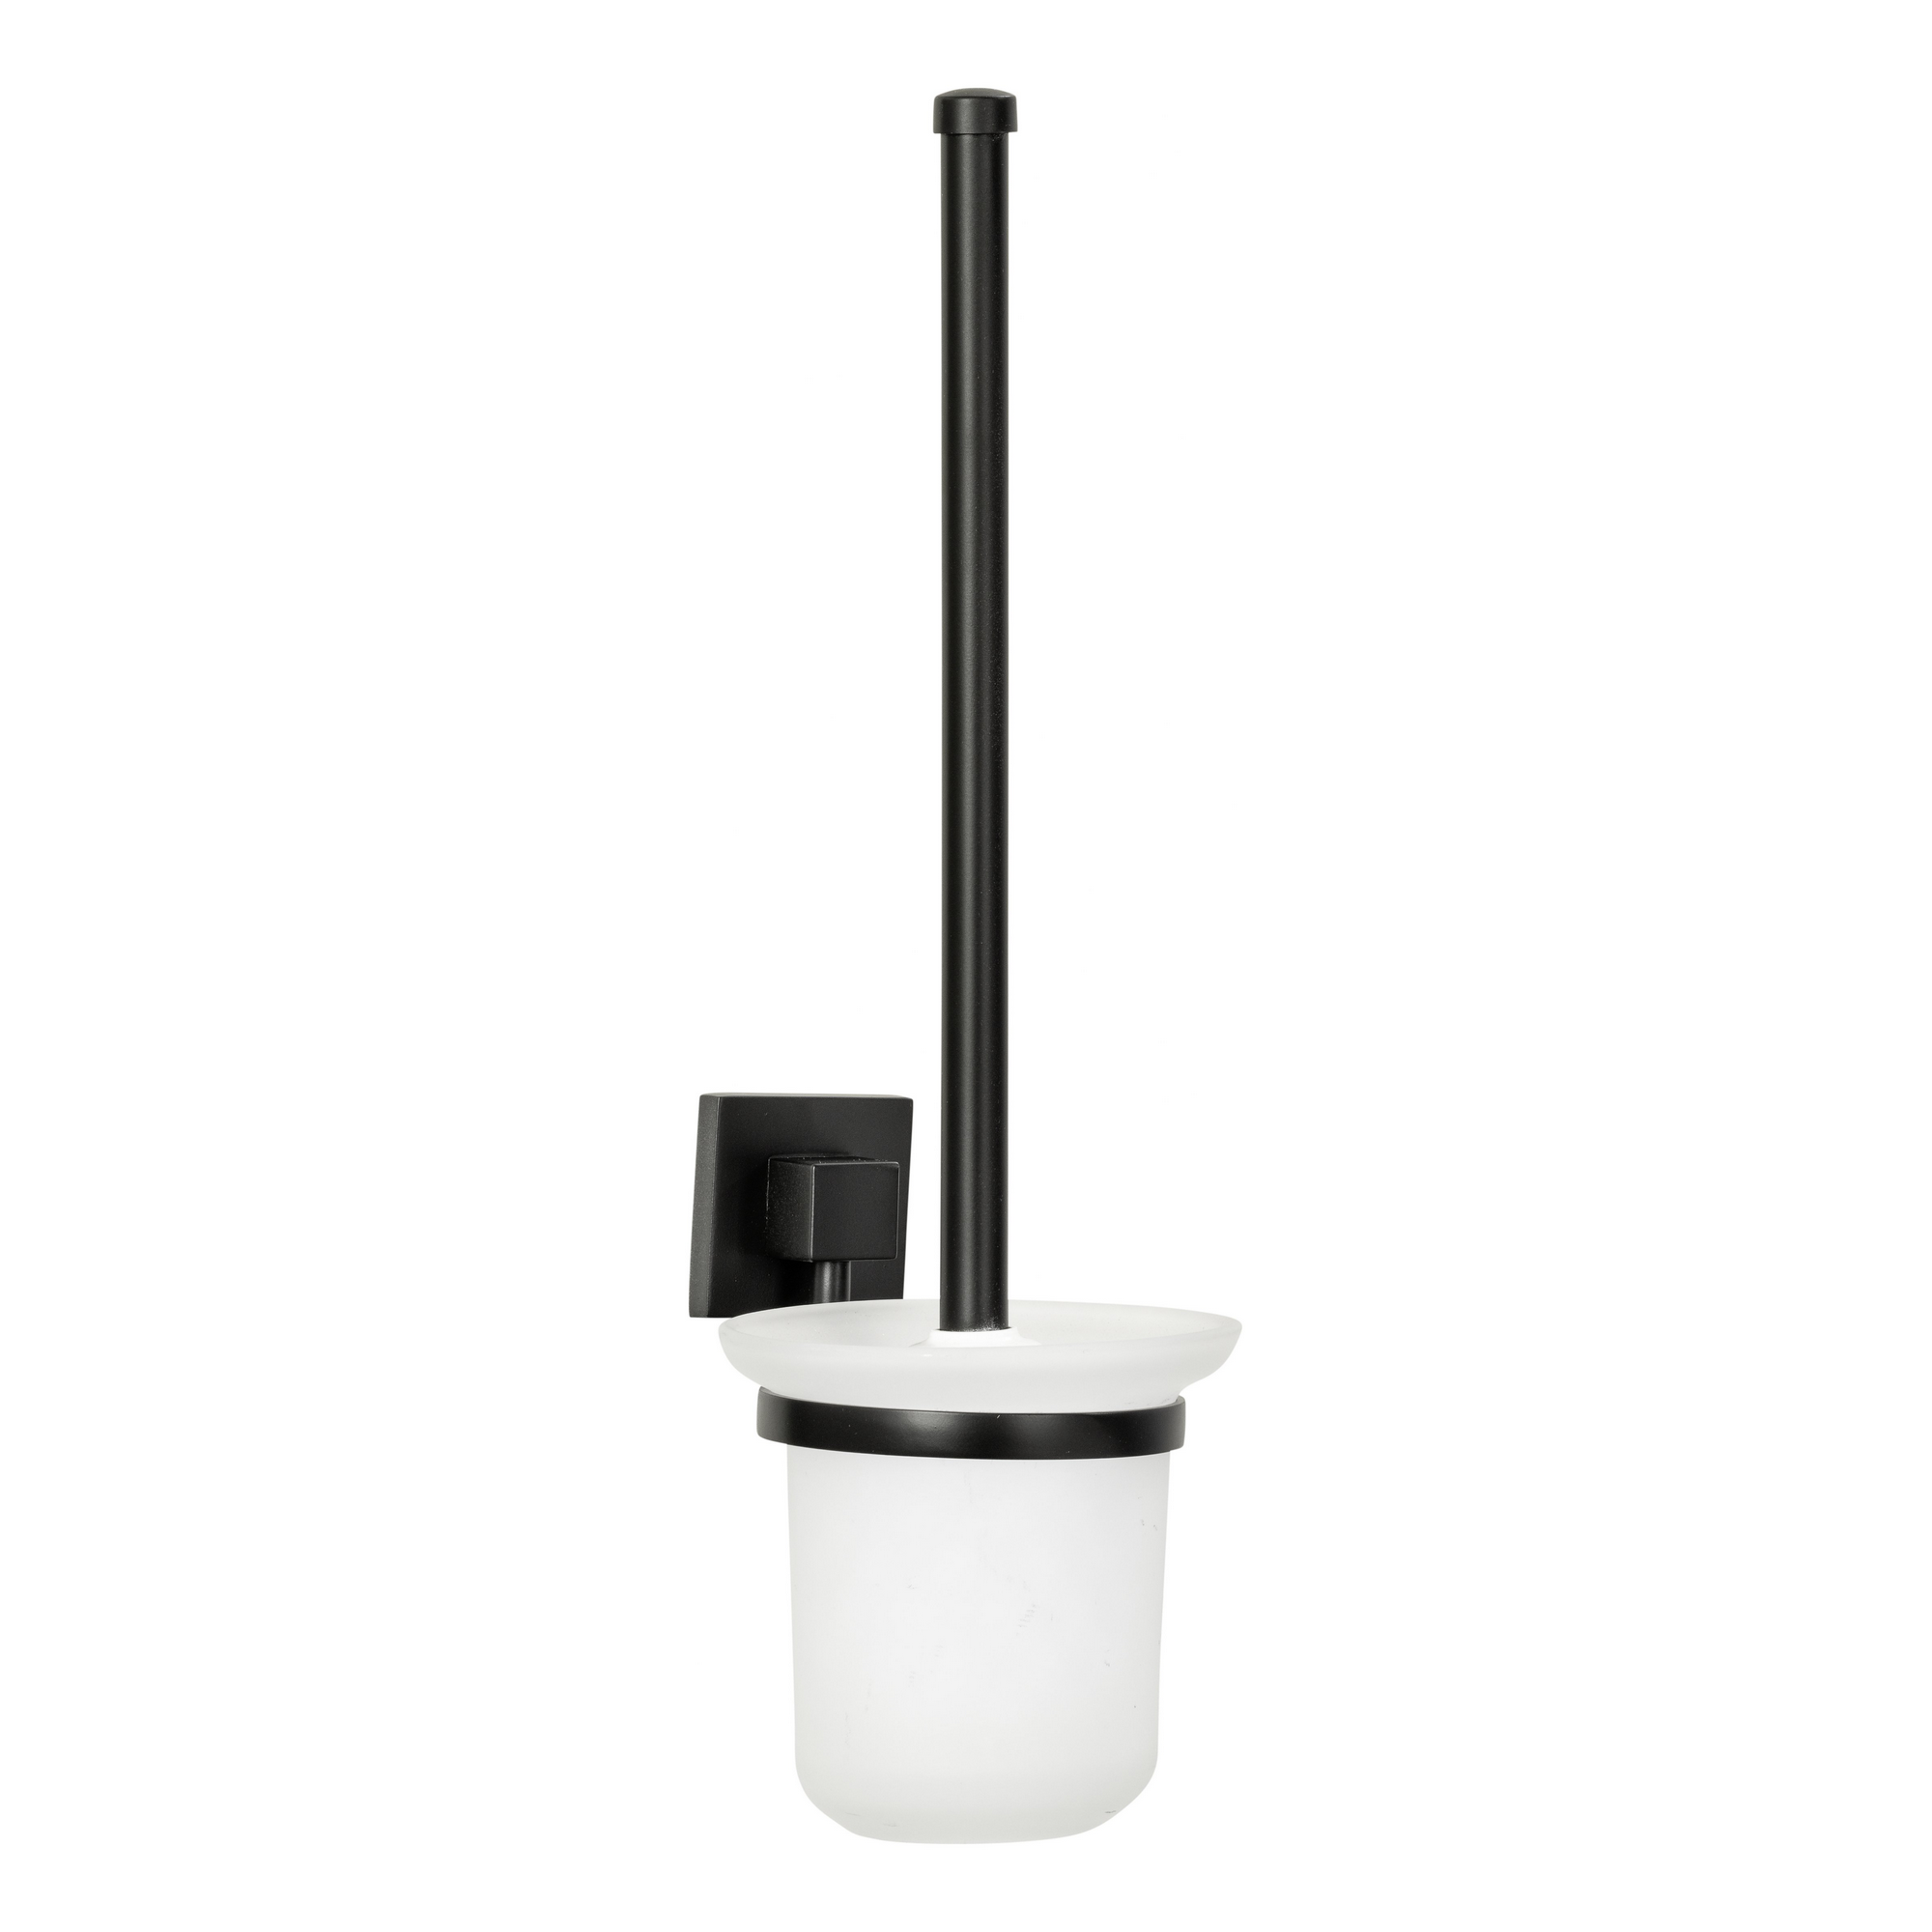 Toilettenbürste mit Wandhalterung, schwarz-weiß + product picture